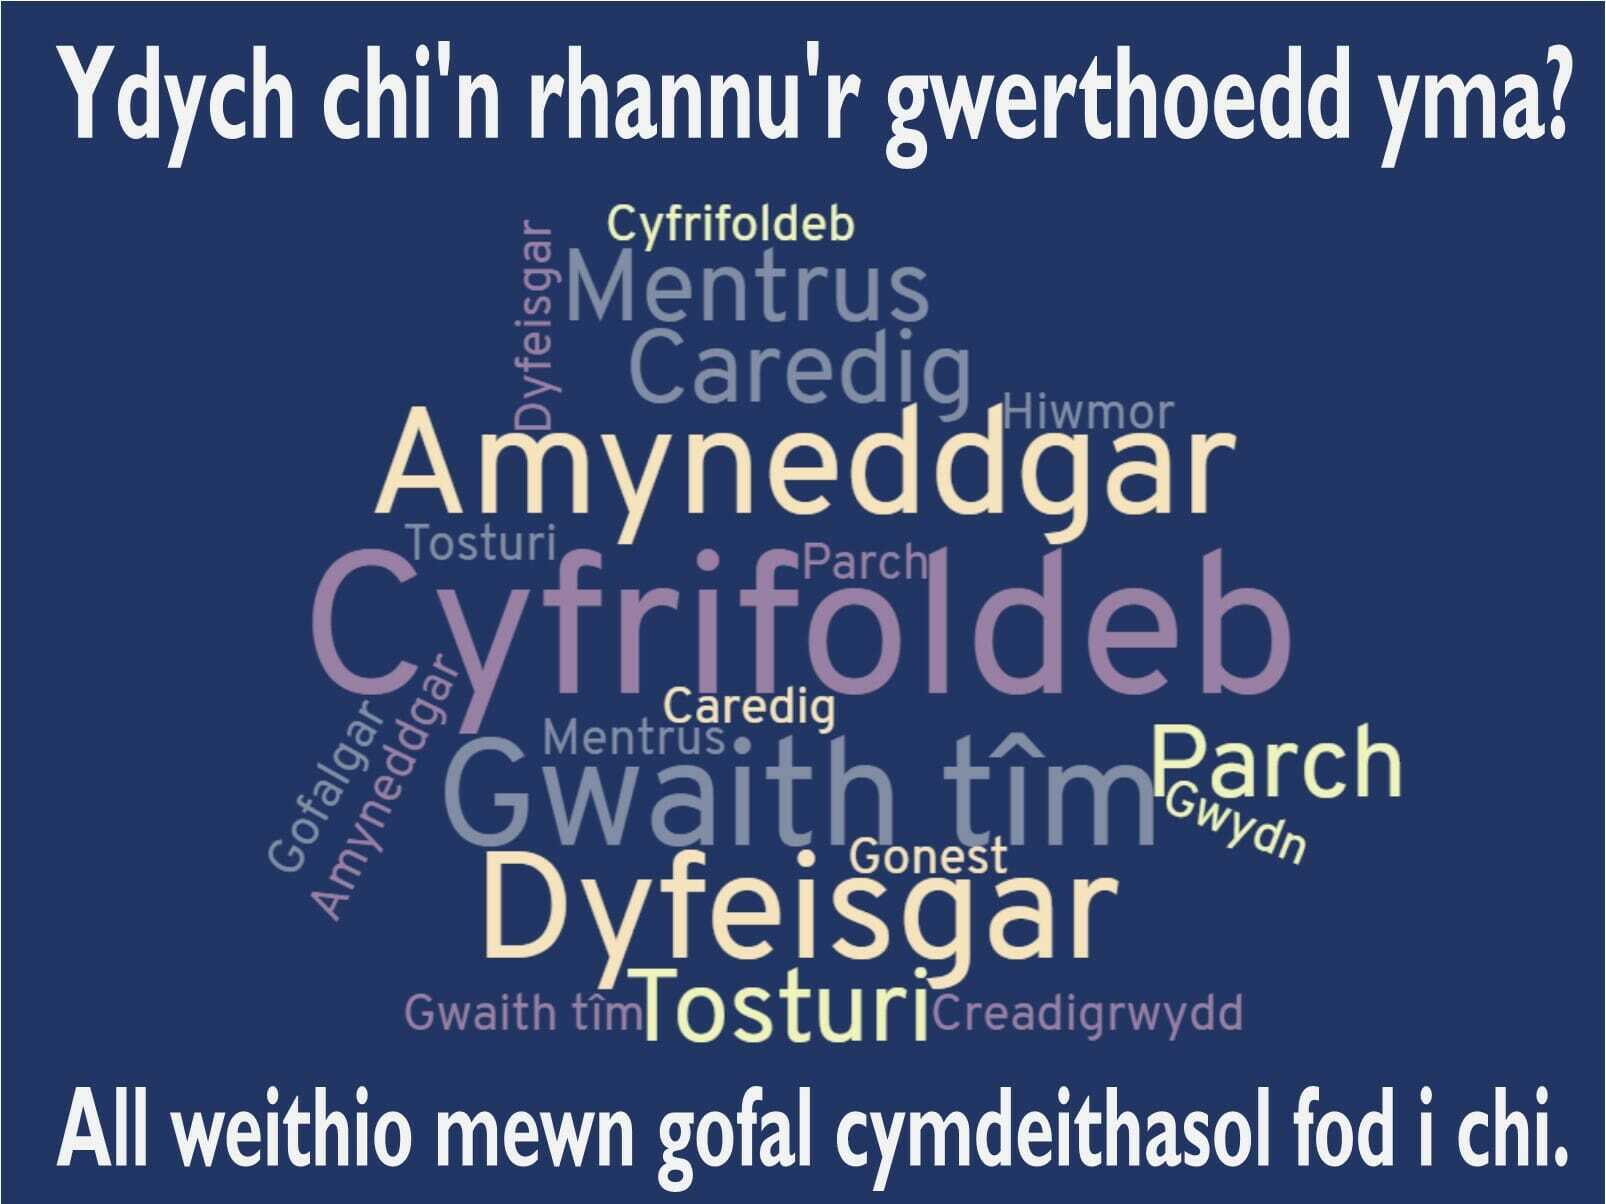 Welsh word cloud about values. Casgliad o eiriau am werthoedd.